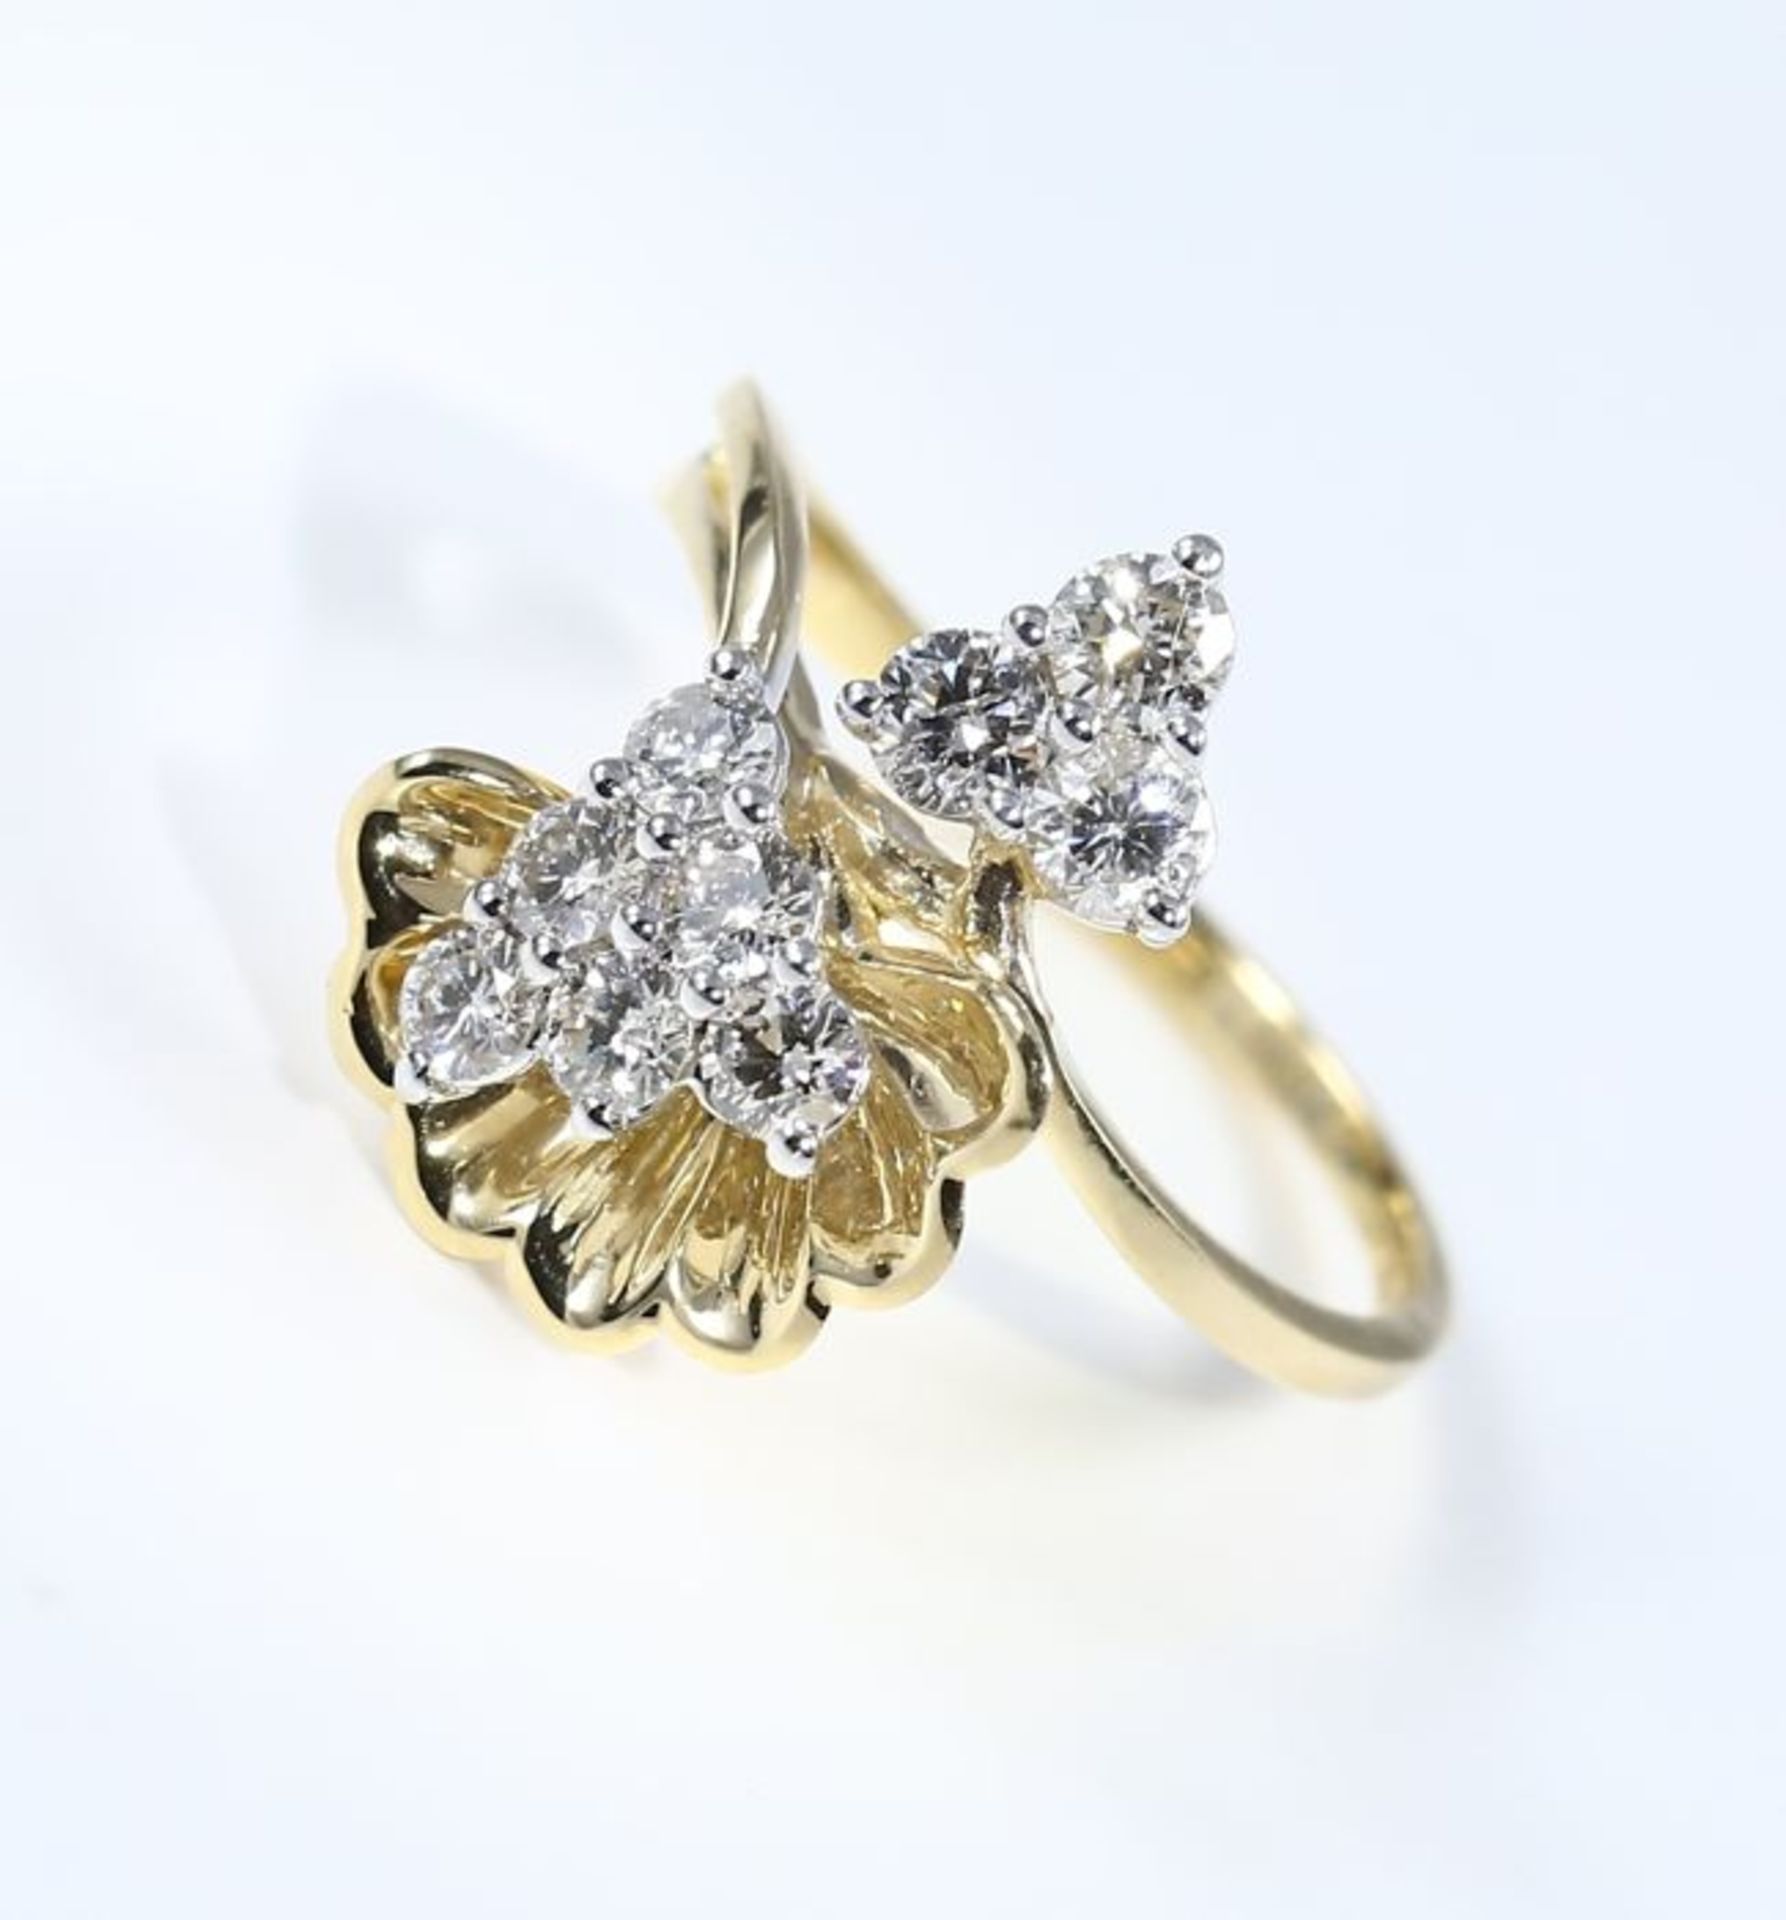 IGI certified 18 K / 750 Yellow gold Designer Diamond Ring - Image 6 of 9